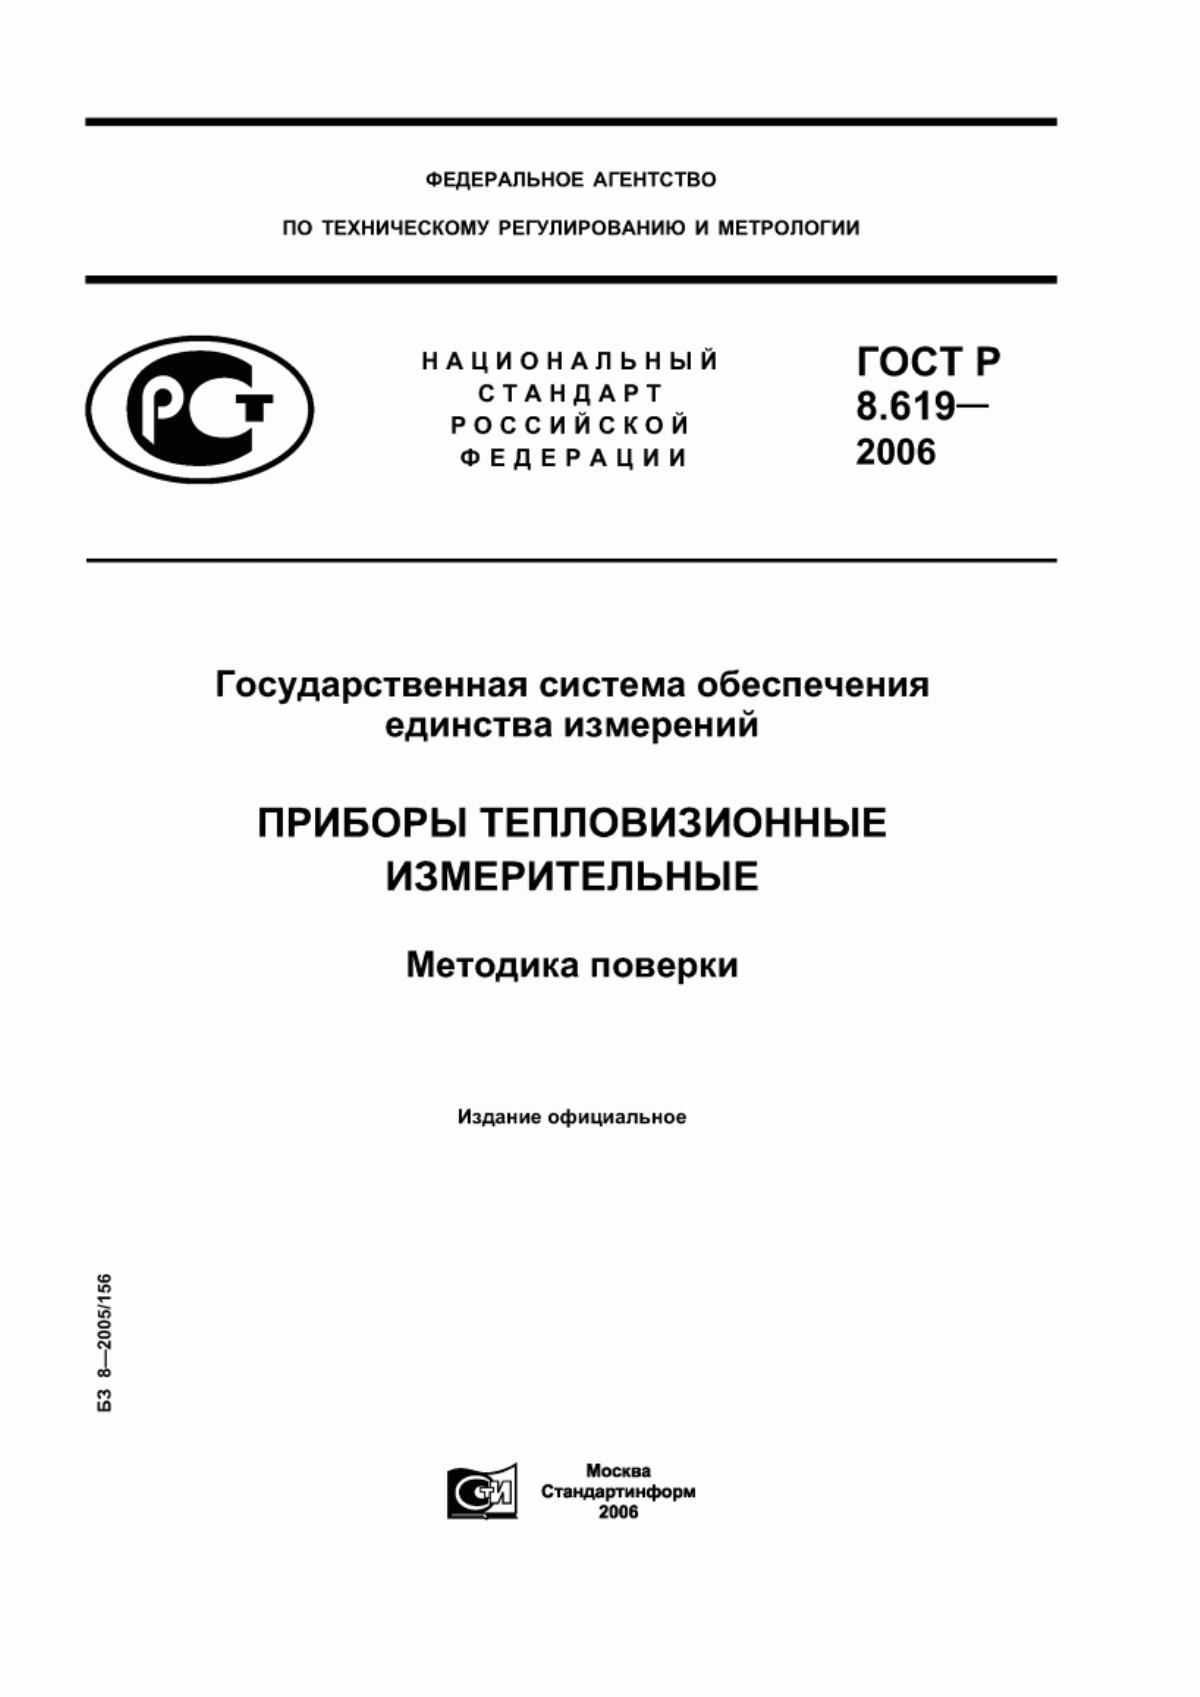 ГОСТ Р 8.619-2006 Государственная система обеспечения единства измерений. Приборы тепловизионные измерительные. Методика поверки